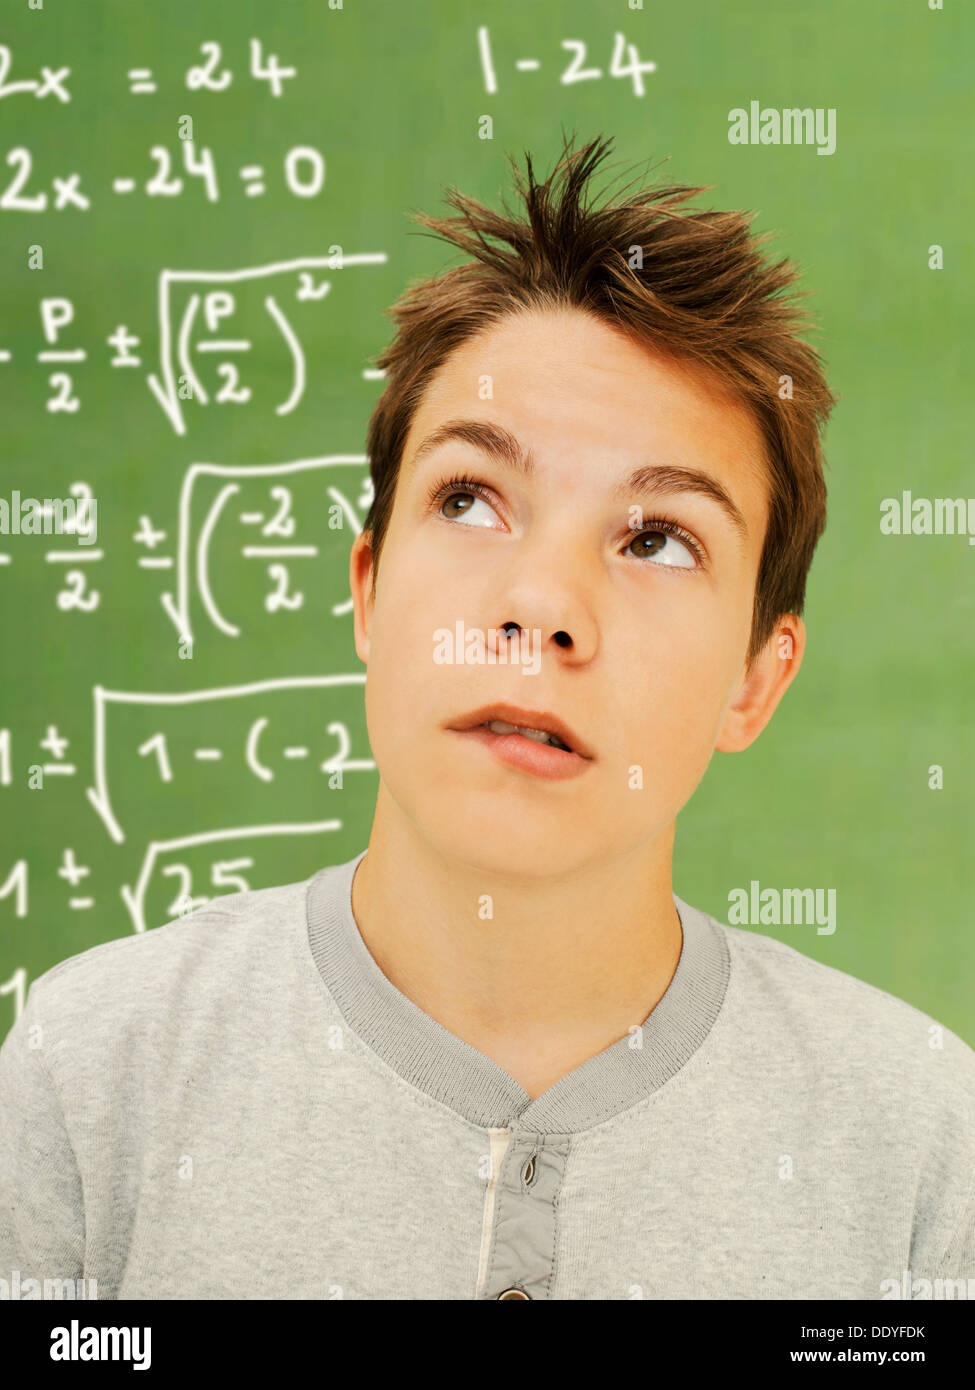 Portrait, écolier, adolescent, avec un air pensif devant une école tableau avec une équation mathématique Banque D'Images